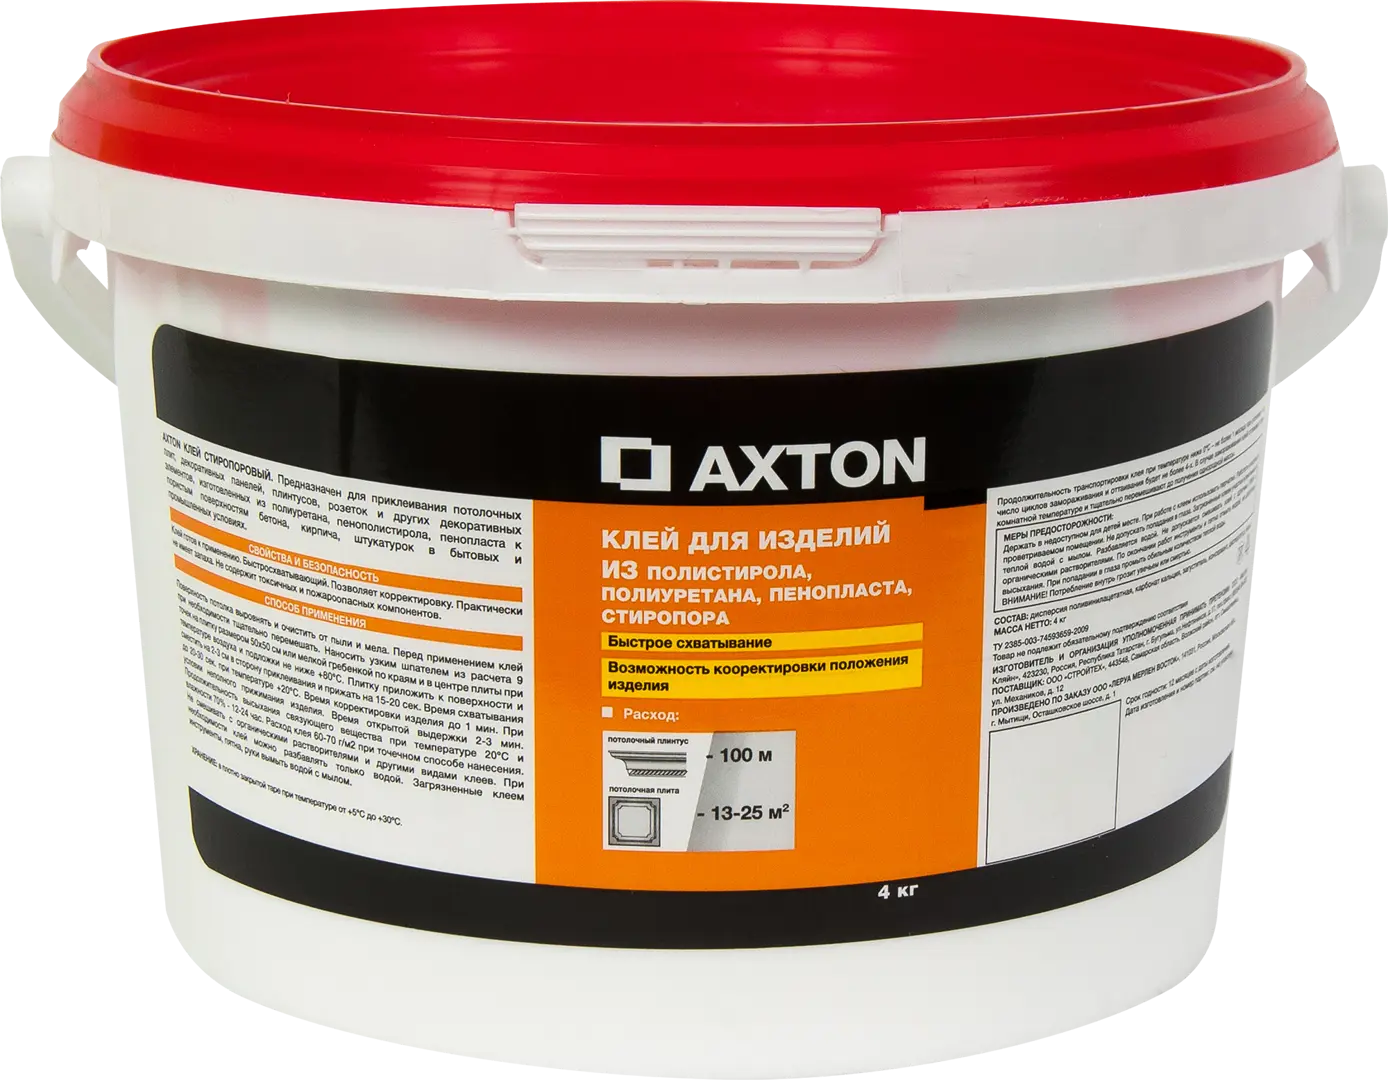 Клей Axton для потолочных изделий стиропоровый 4 кг клей axton для потолочных изделий полимерный 1 л